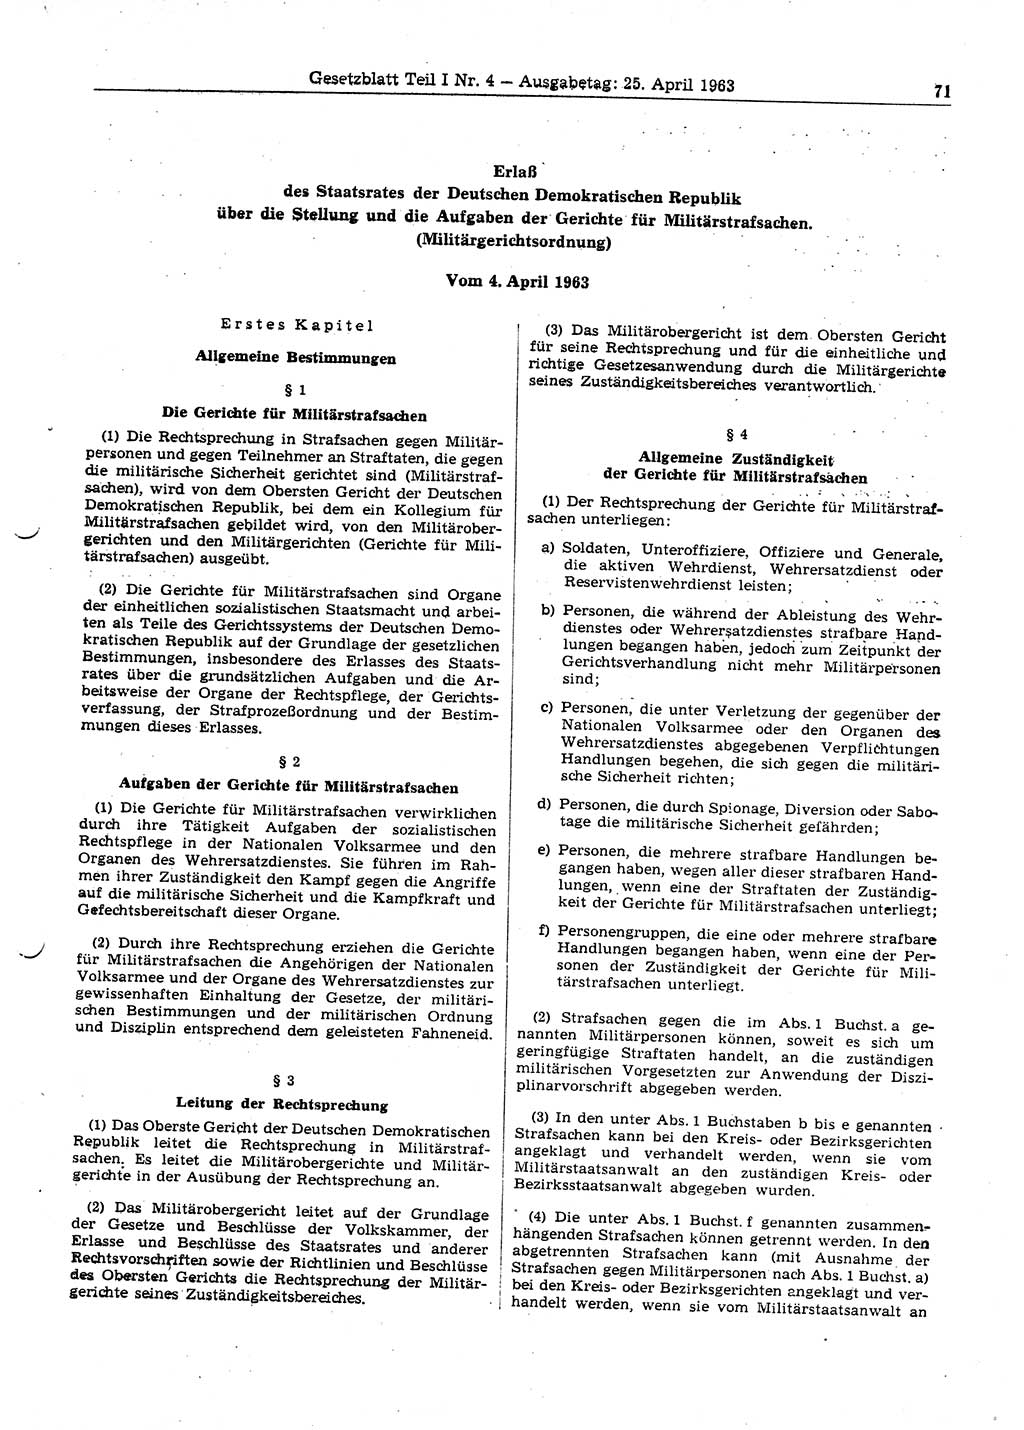 Gesetzblatt (GBl.) der Deutschen Demokratischen Republik (DDR) Teil Ⅰ 1963, Seite 71 (GBl. DDR Ⅰ 1963, S. 71)